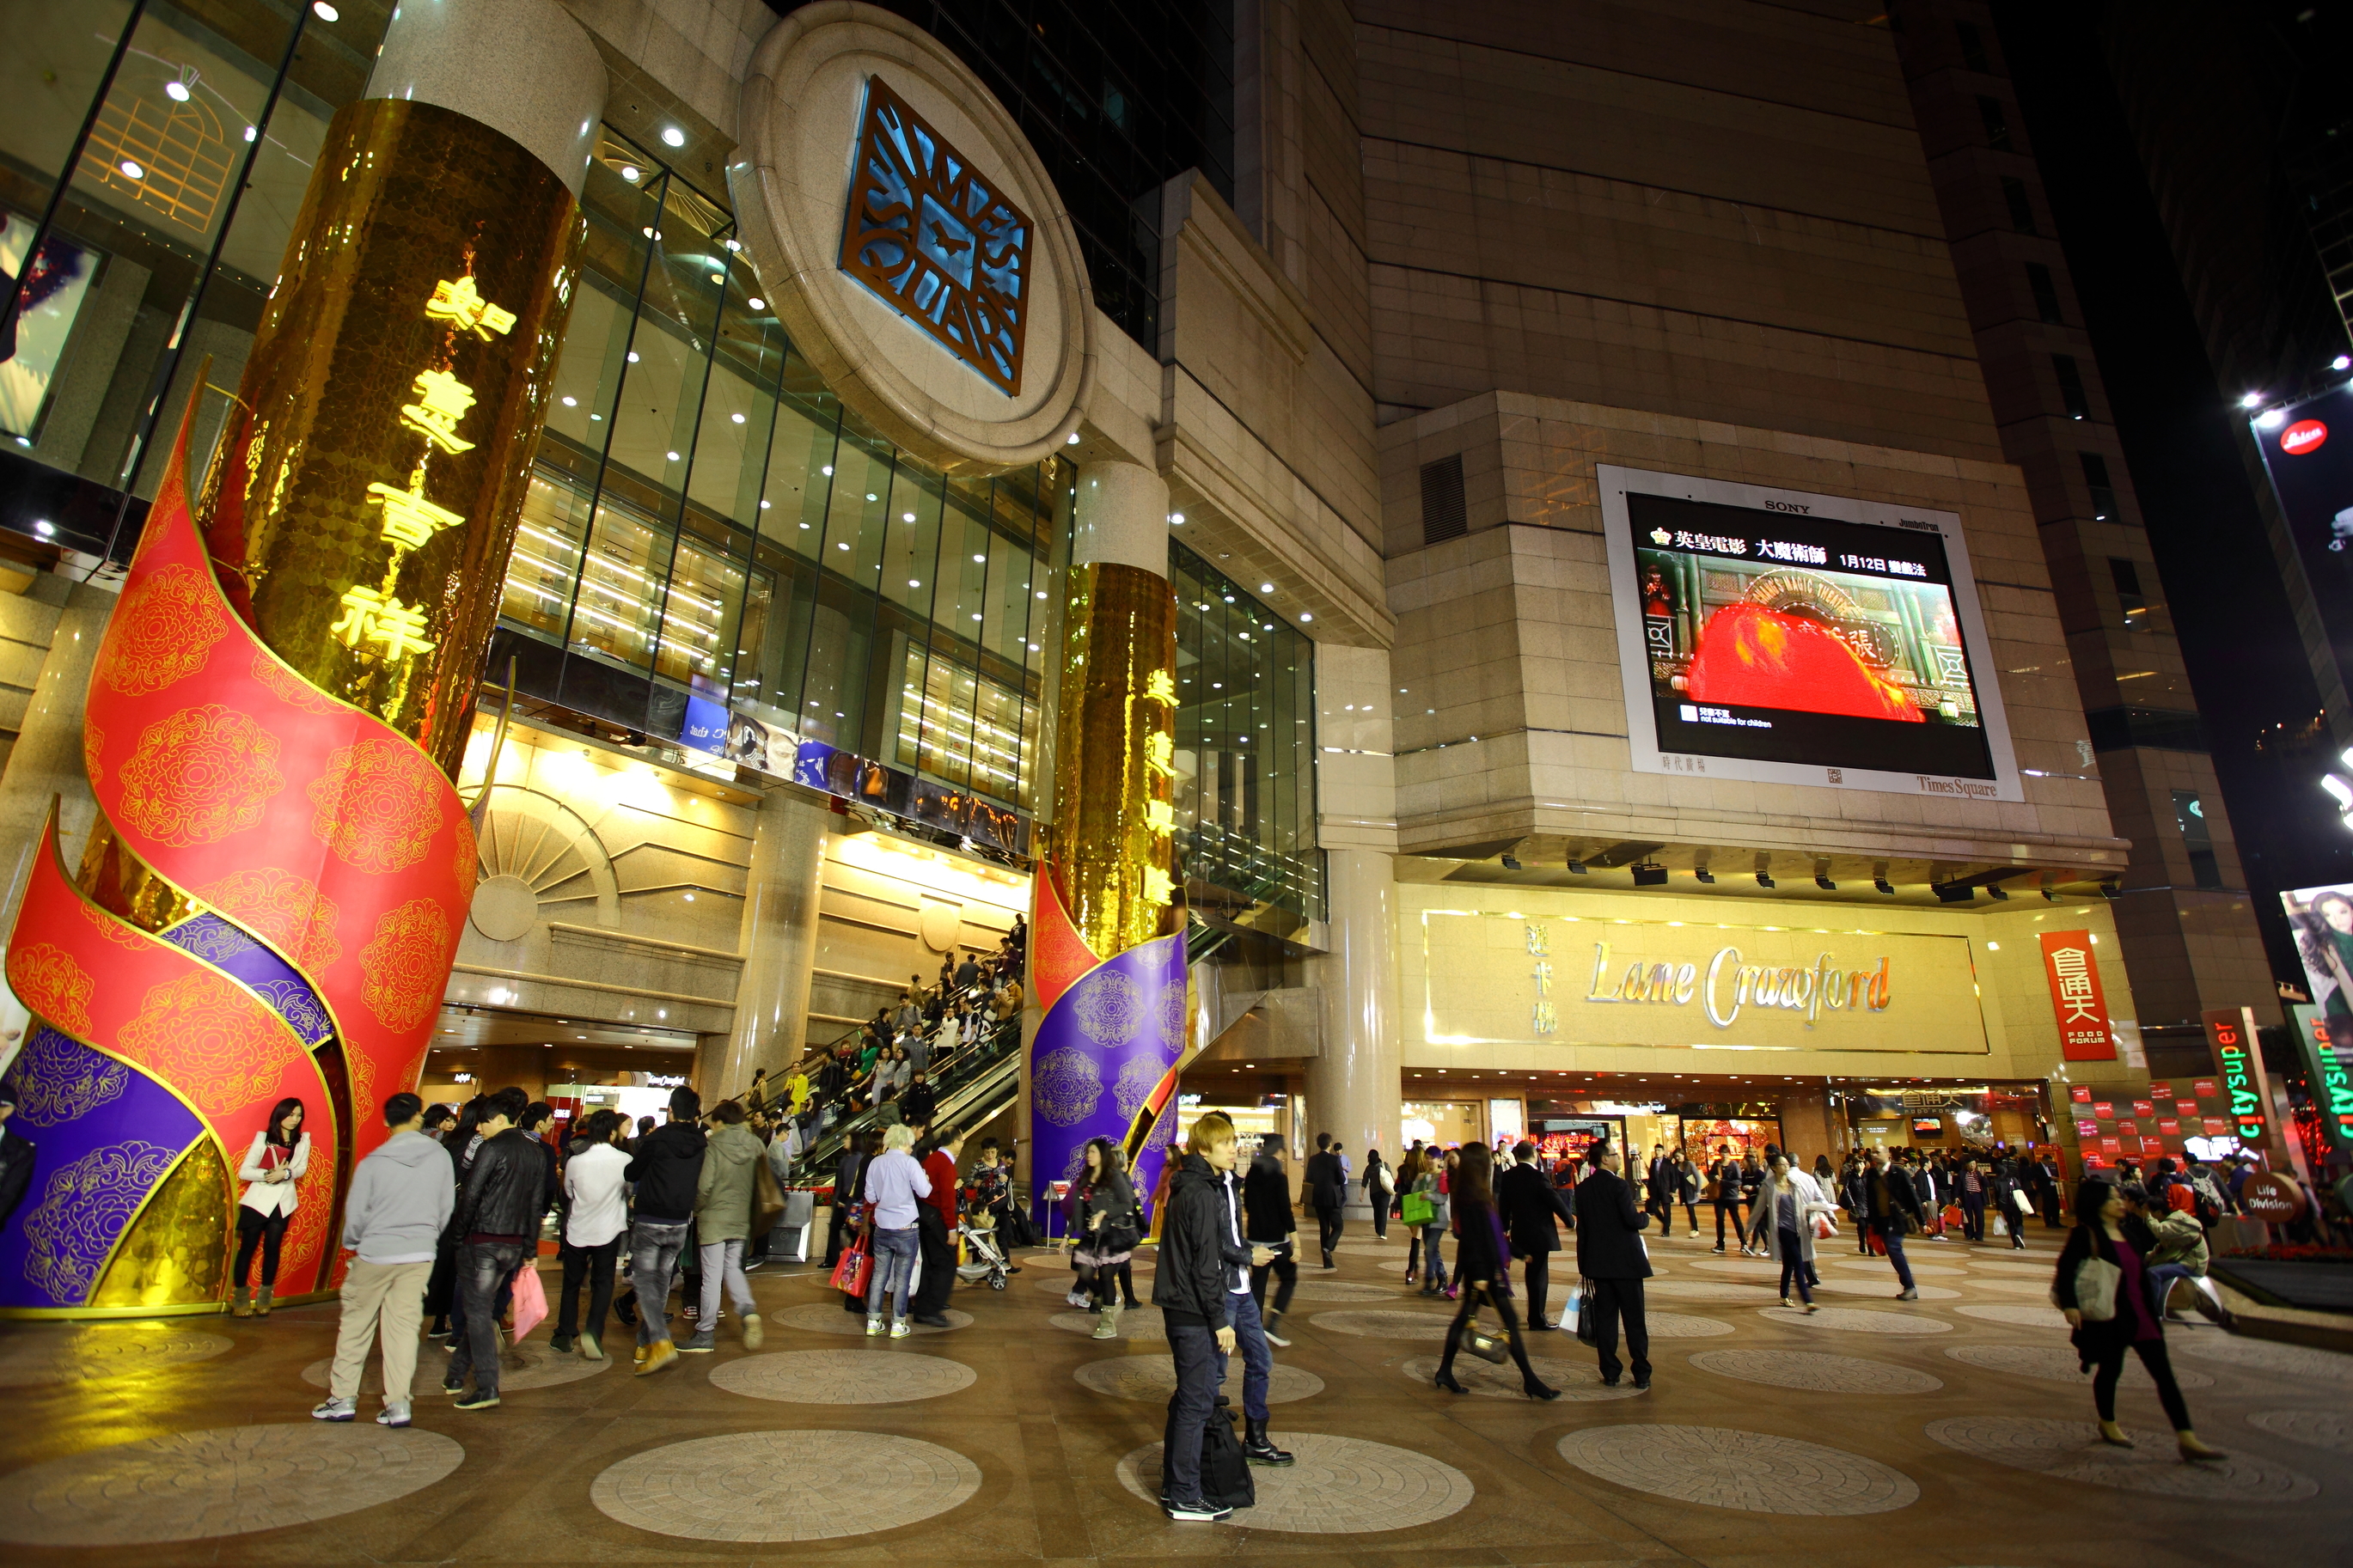 10 Best Shopping Malls in Hong Kong - Hong Kong's Most Popular